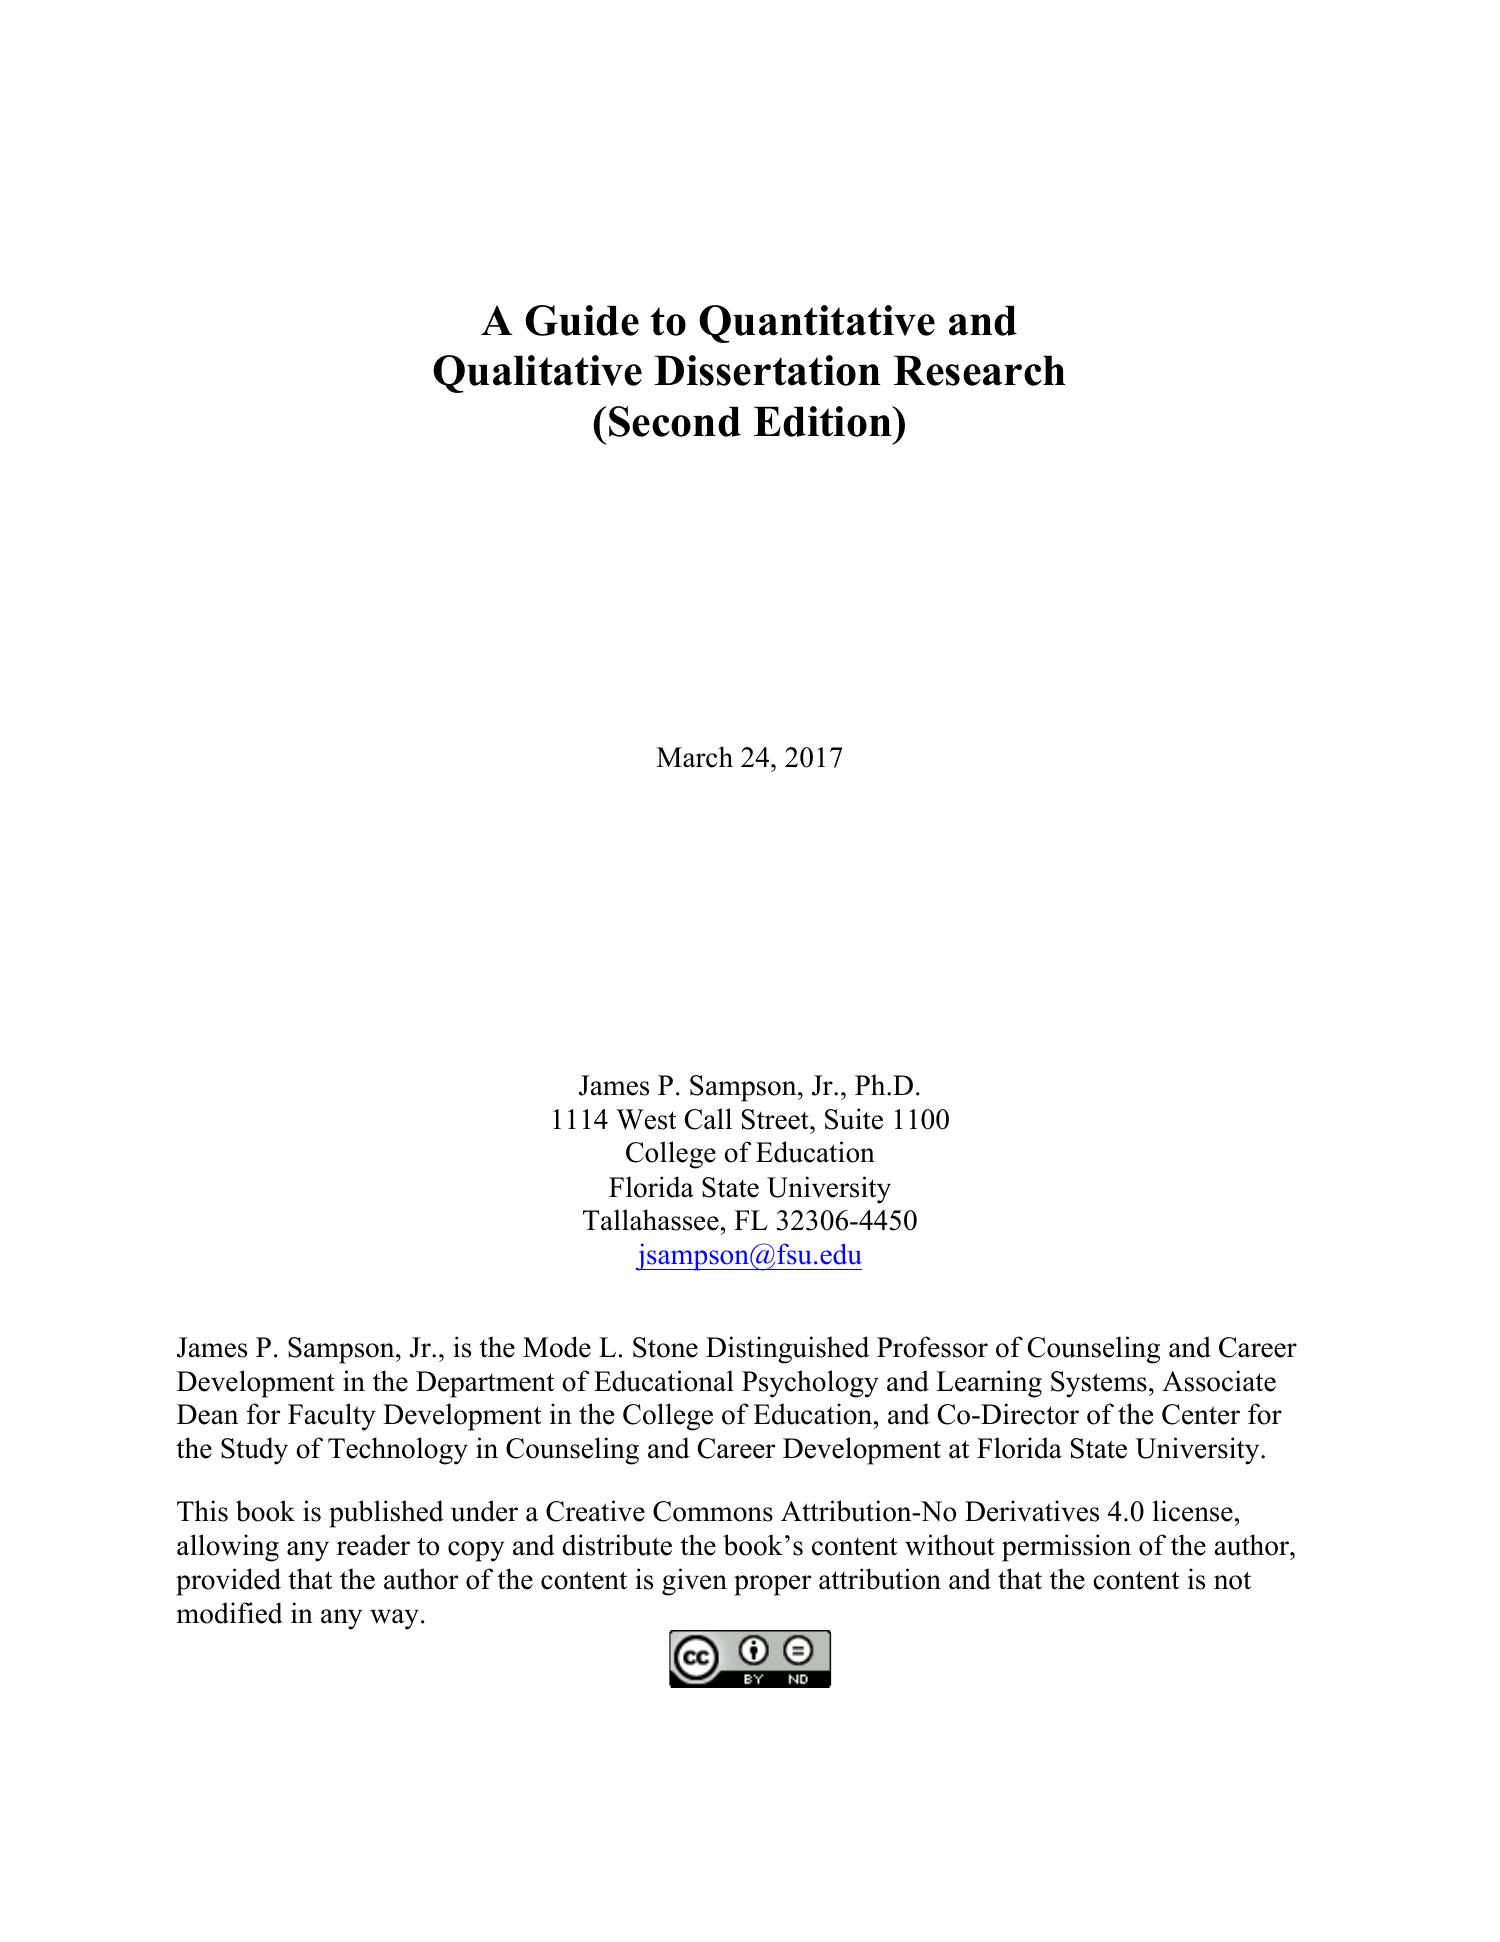 phd thesis qualitative study